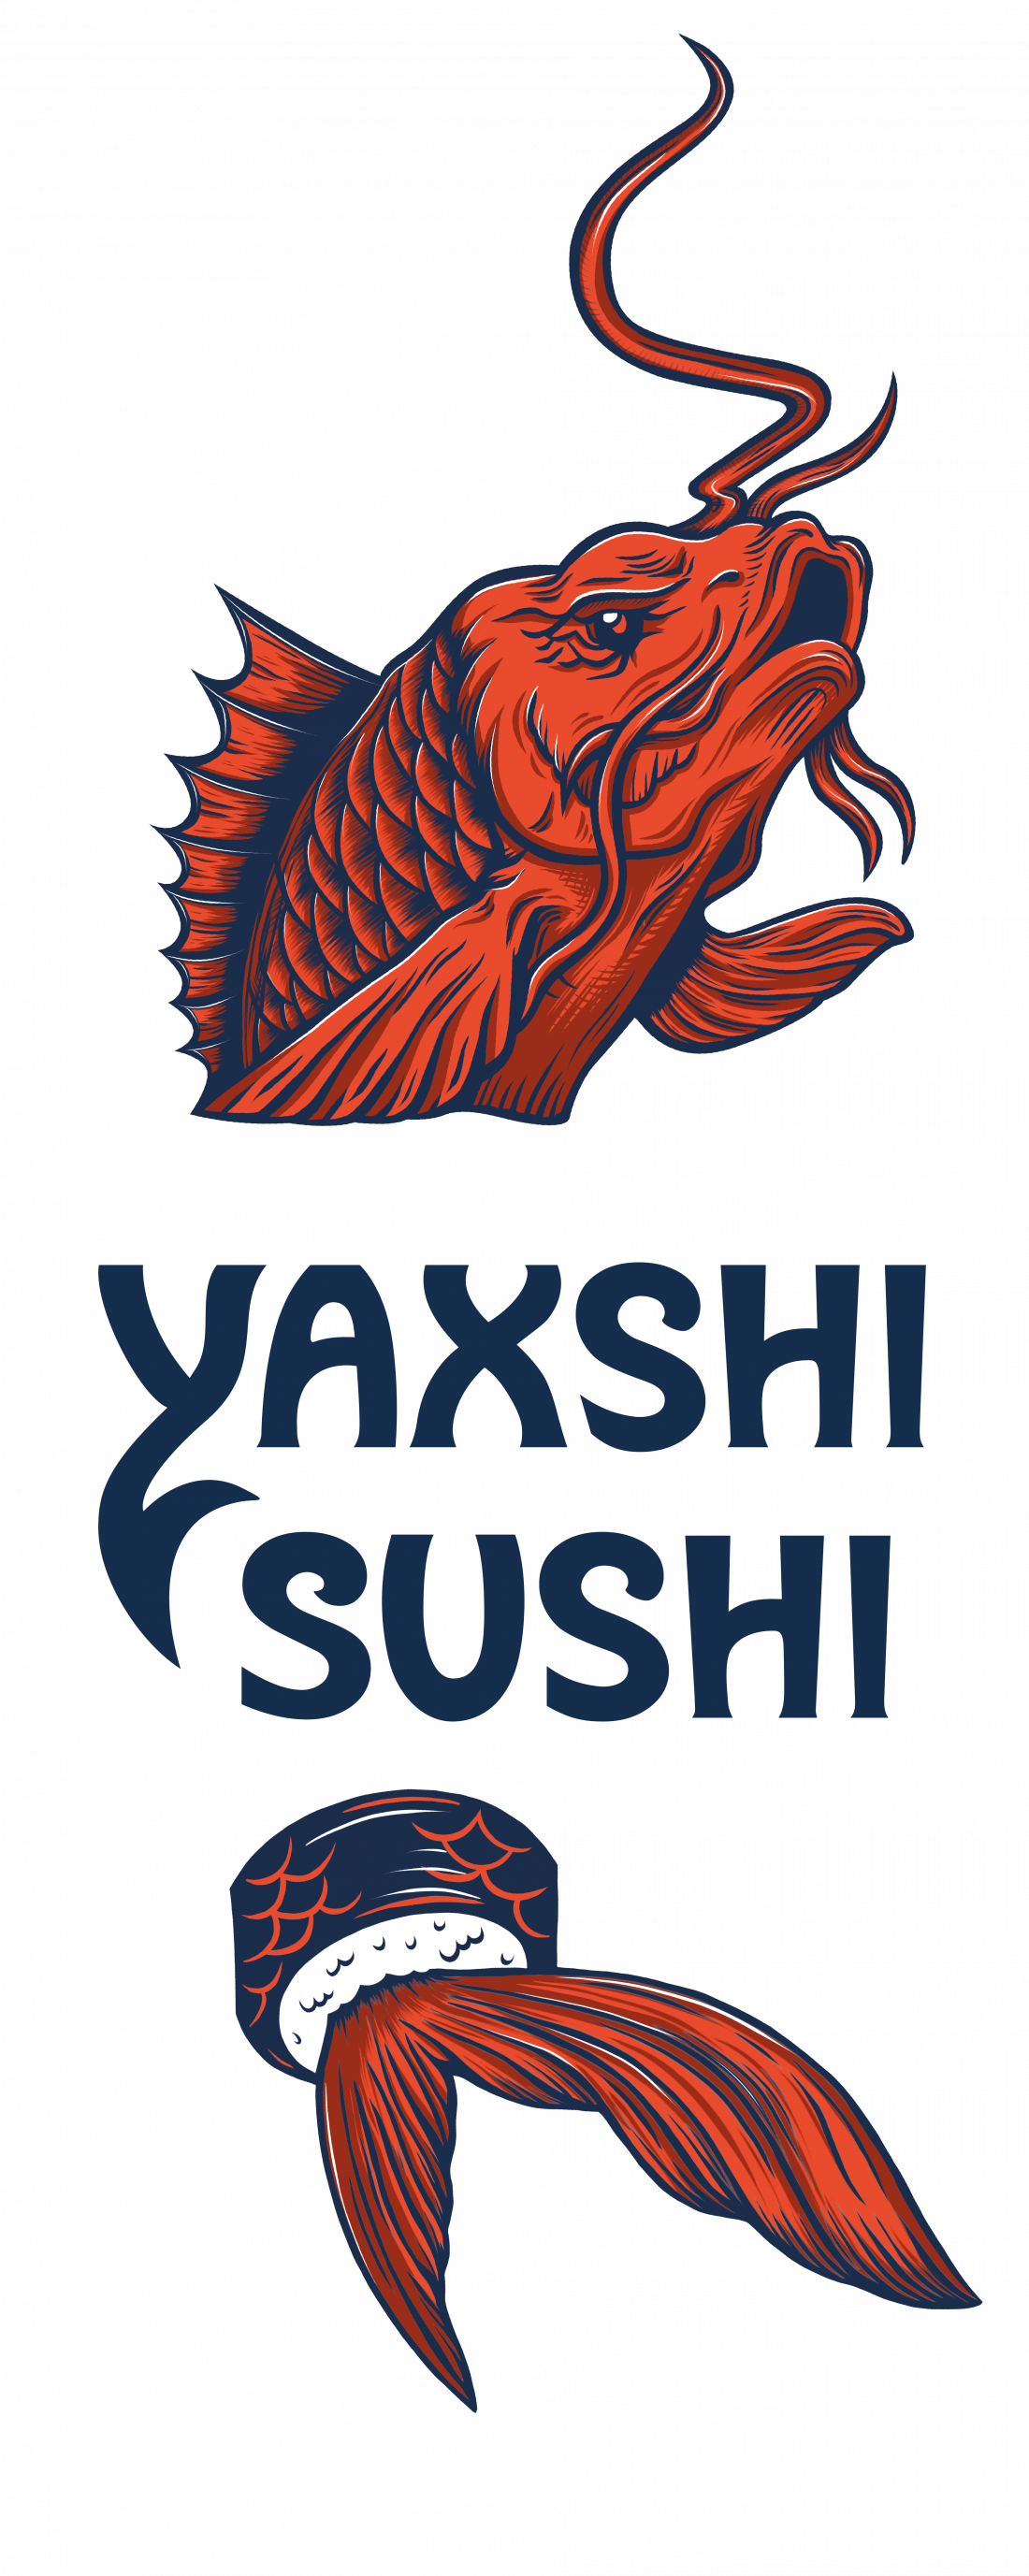 Суши-сеты со скидкой 50% от "Yaxshi Sushi"